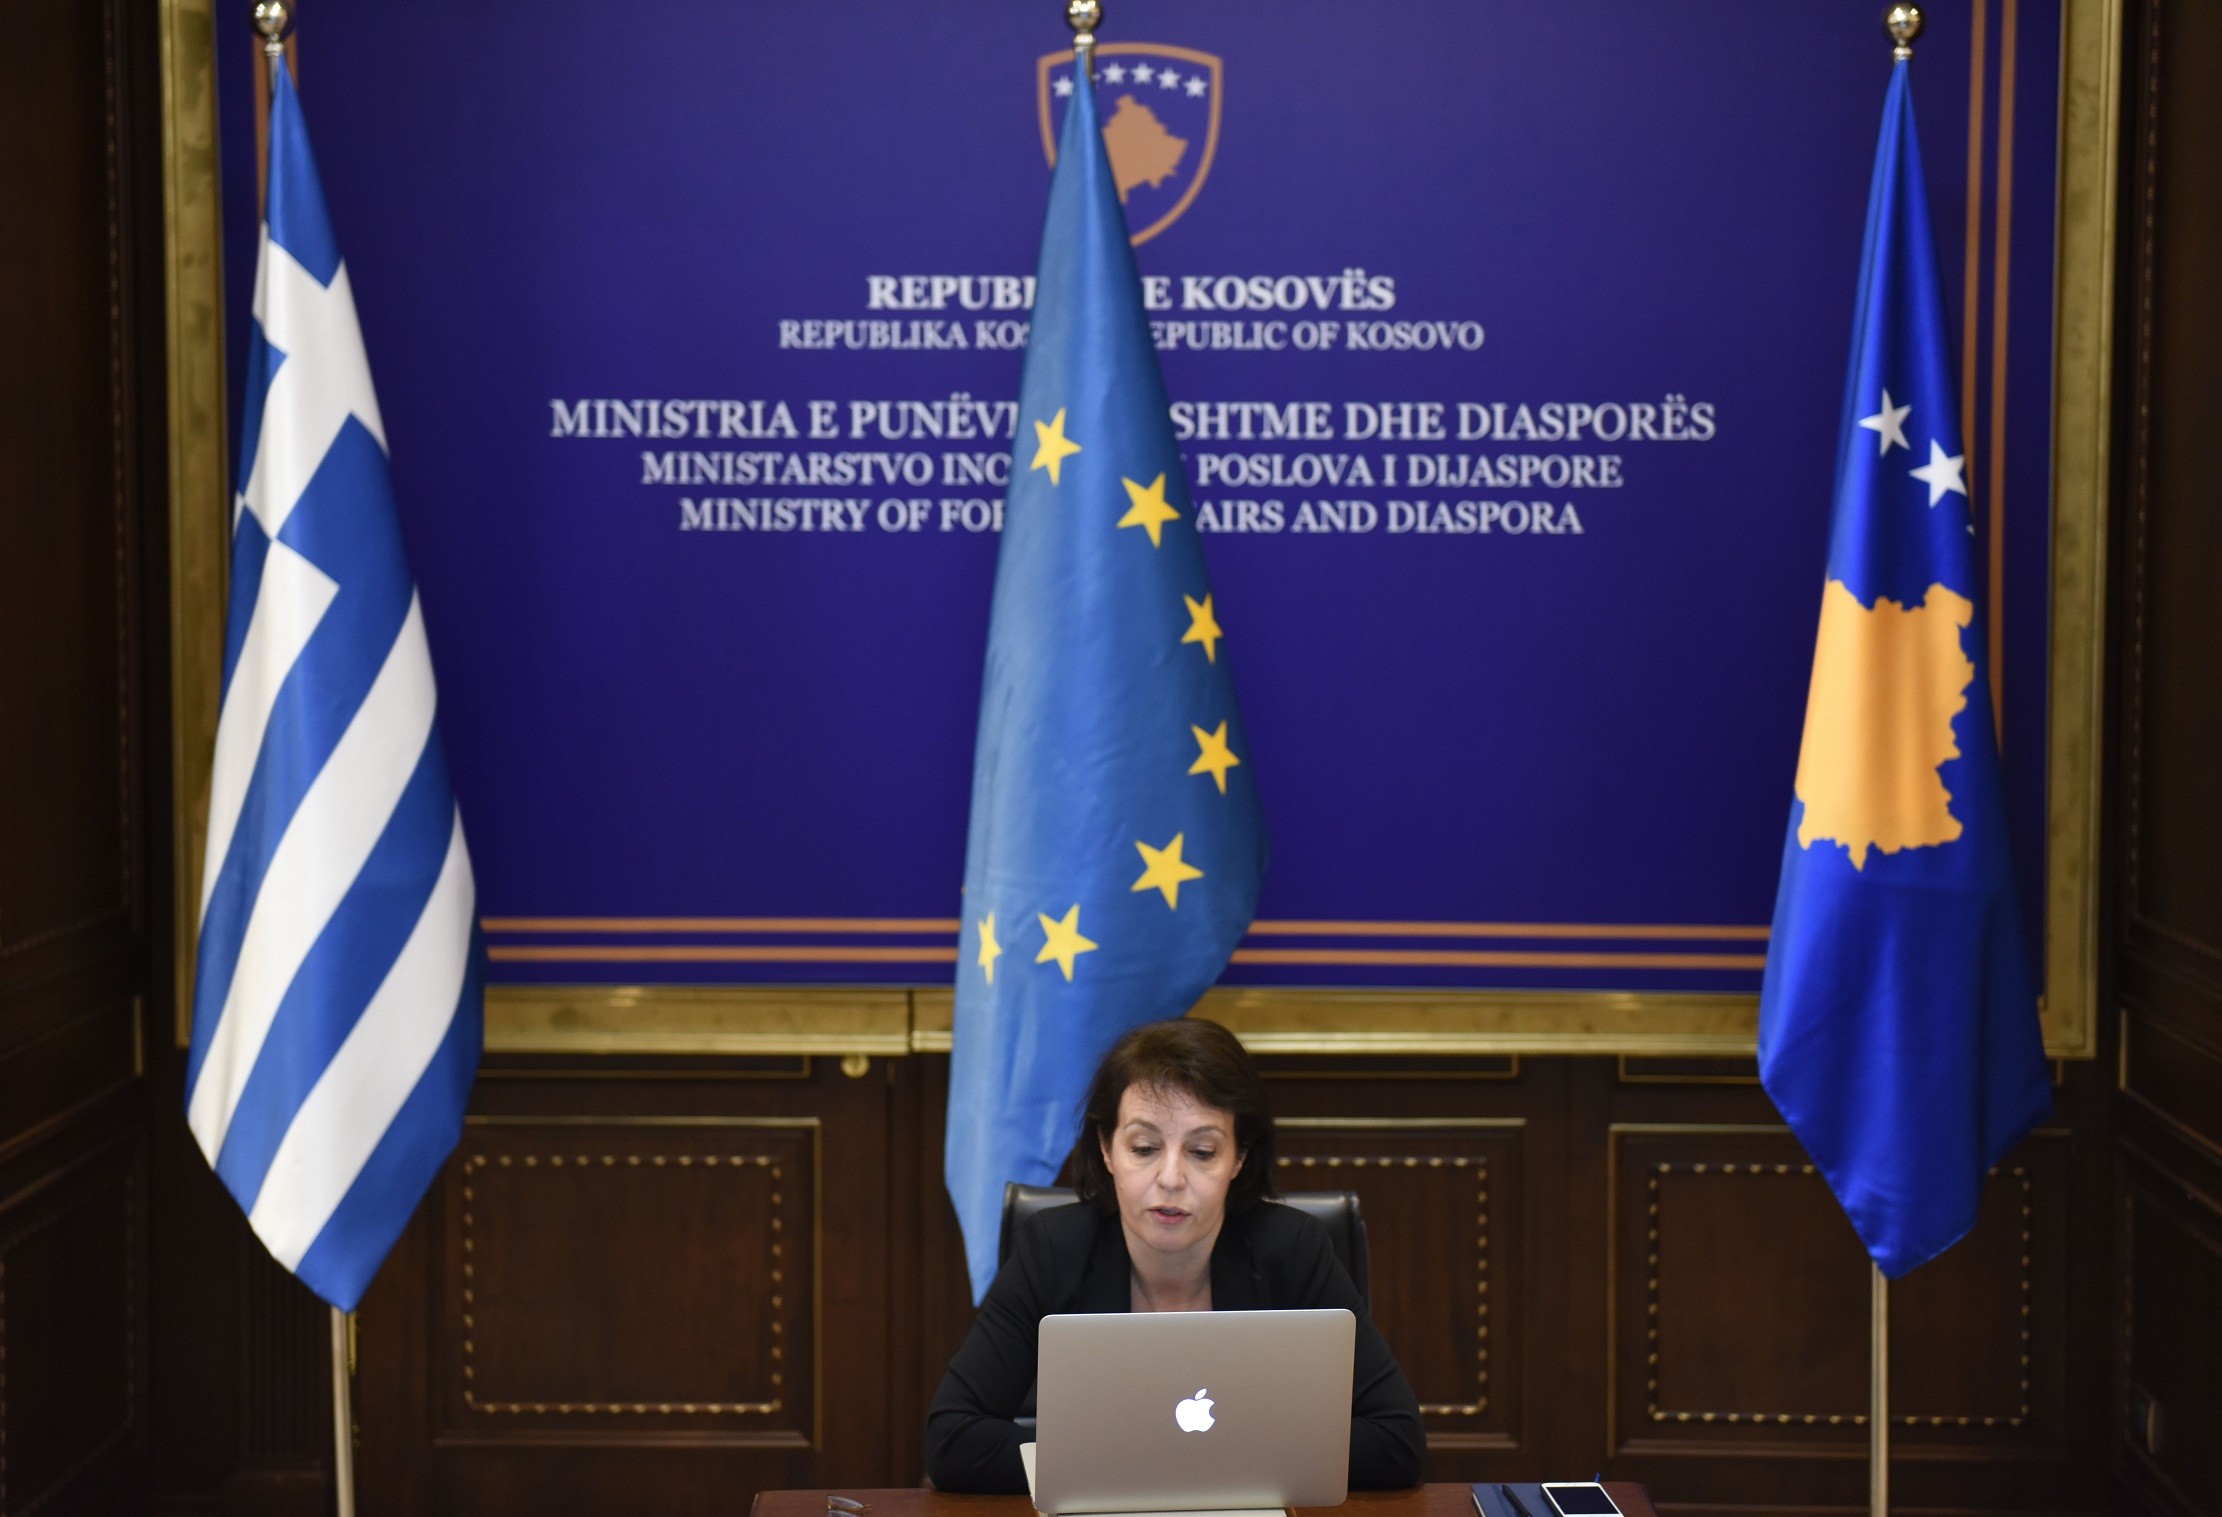 Mbahet forumi i tretë ekonomik Kosovë - Greqi për sektorin e energjisë